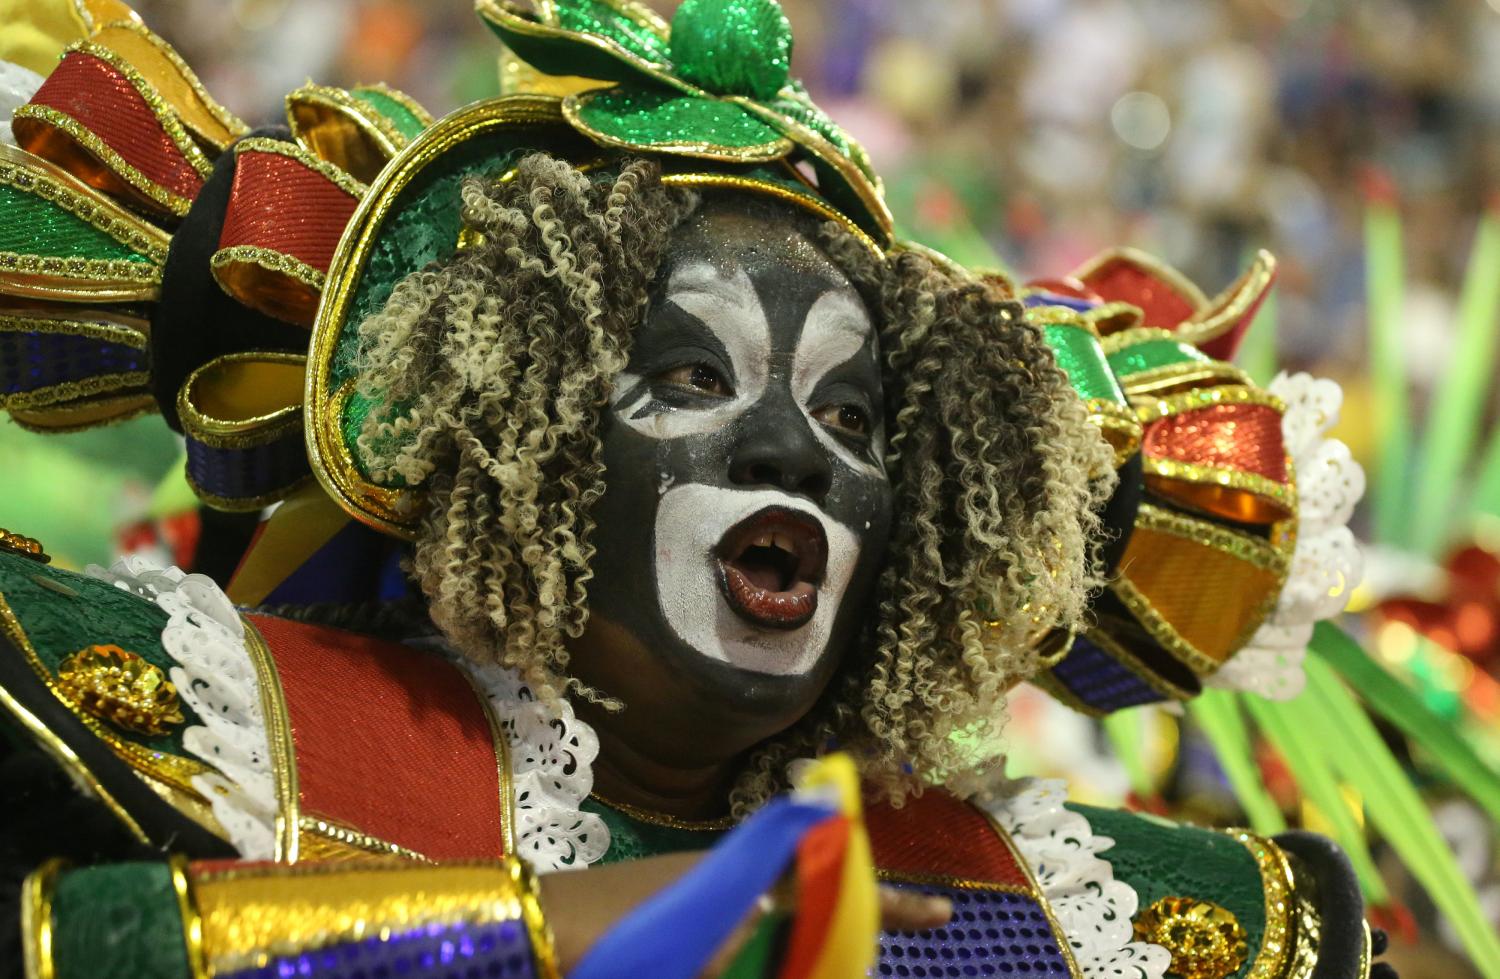 Karnaval. Карнавал Рио де Жанейро маски. Карнавальные маски в Рио де Жанейро. Карнавал маска костюм Рио де Жанейро. Бразильский карнавал Самба 20 век.